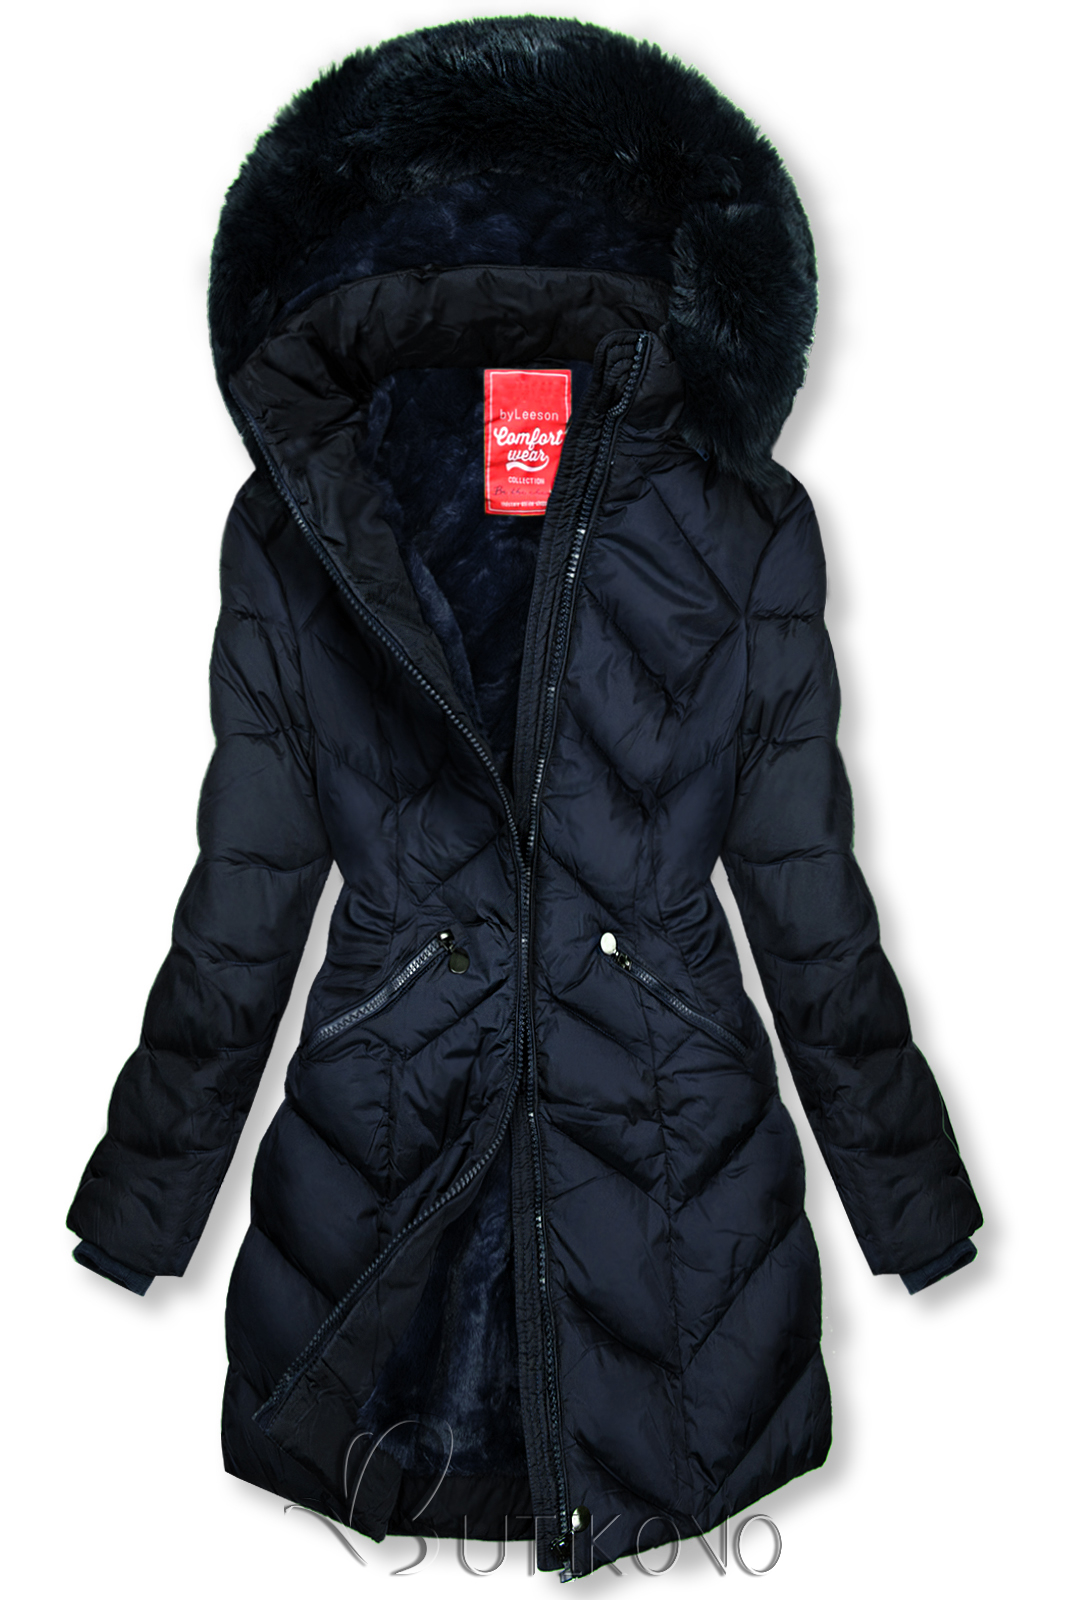 Tmavomodrá prešívaná zimná bunda s odopínateľnou kapucňou